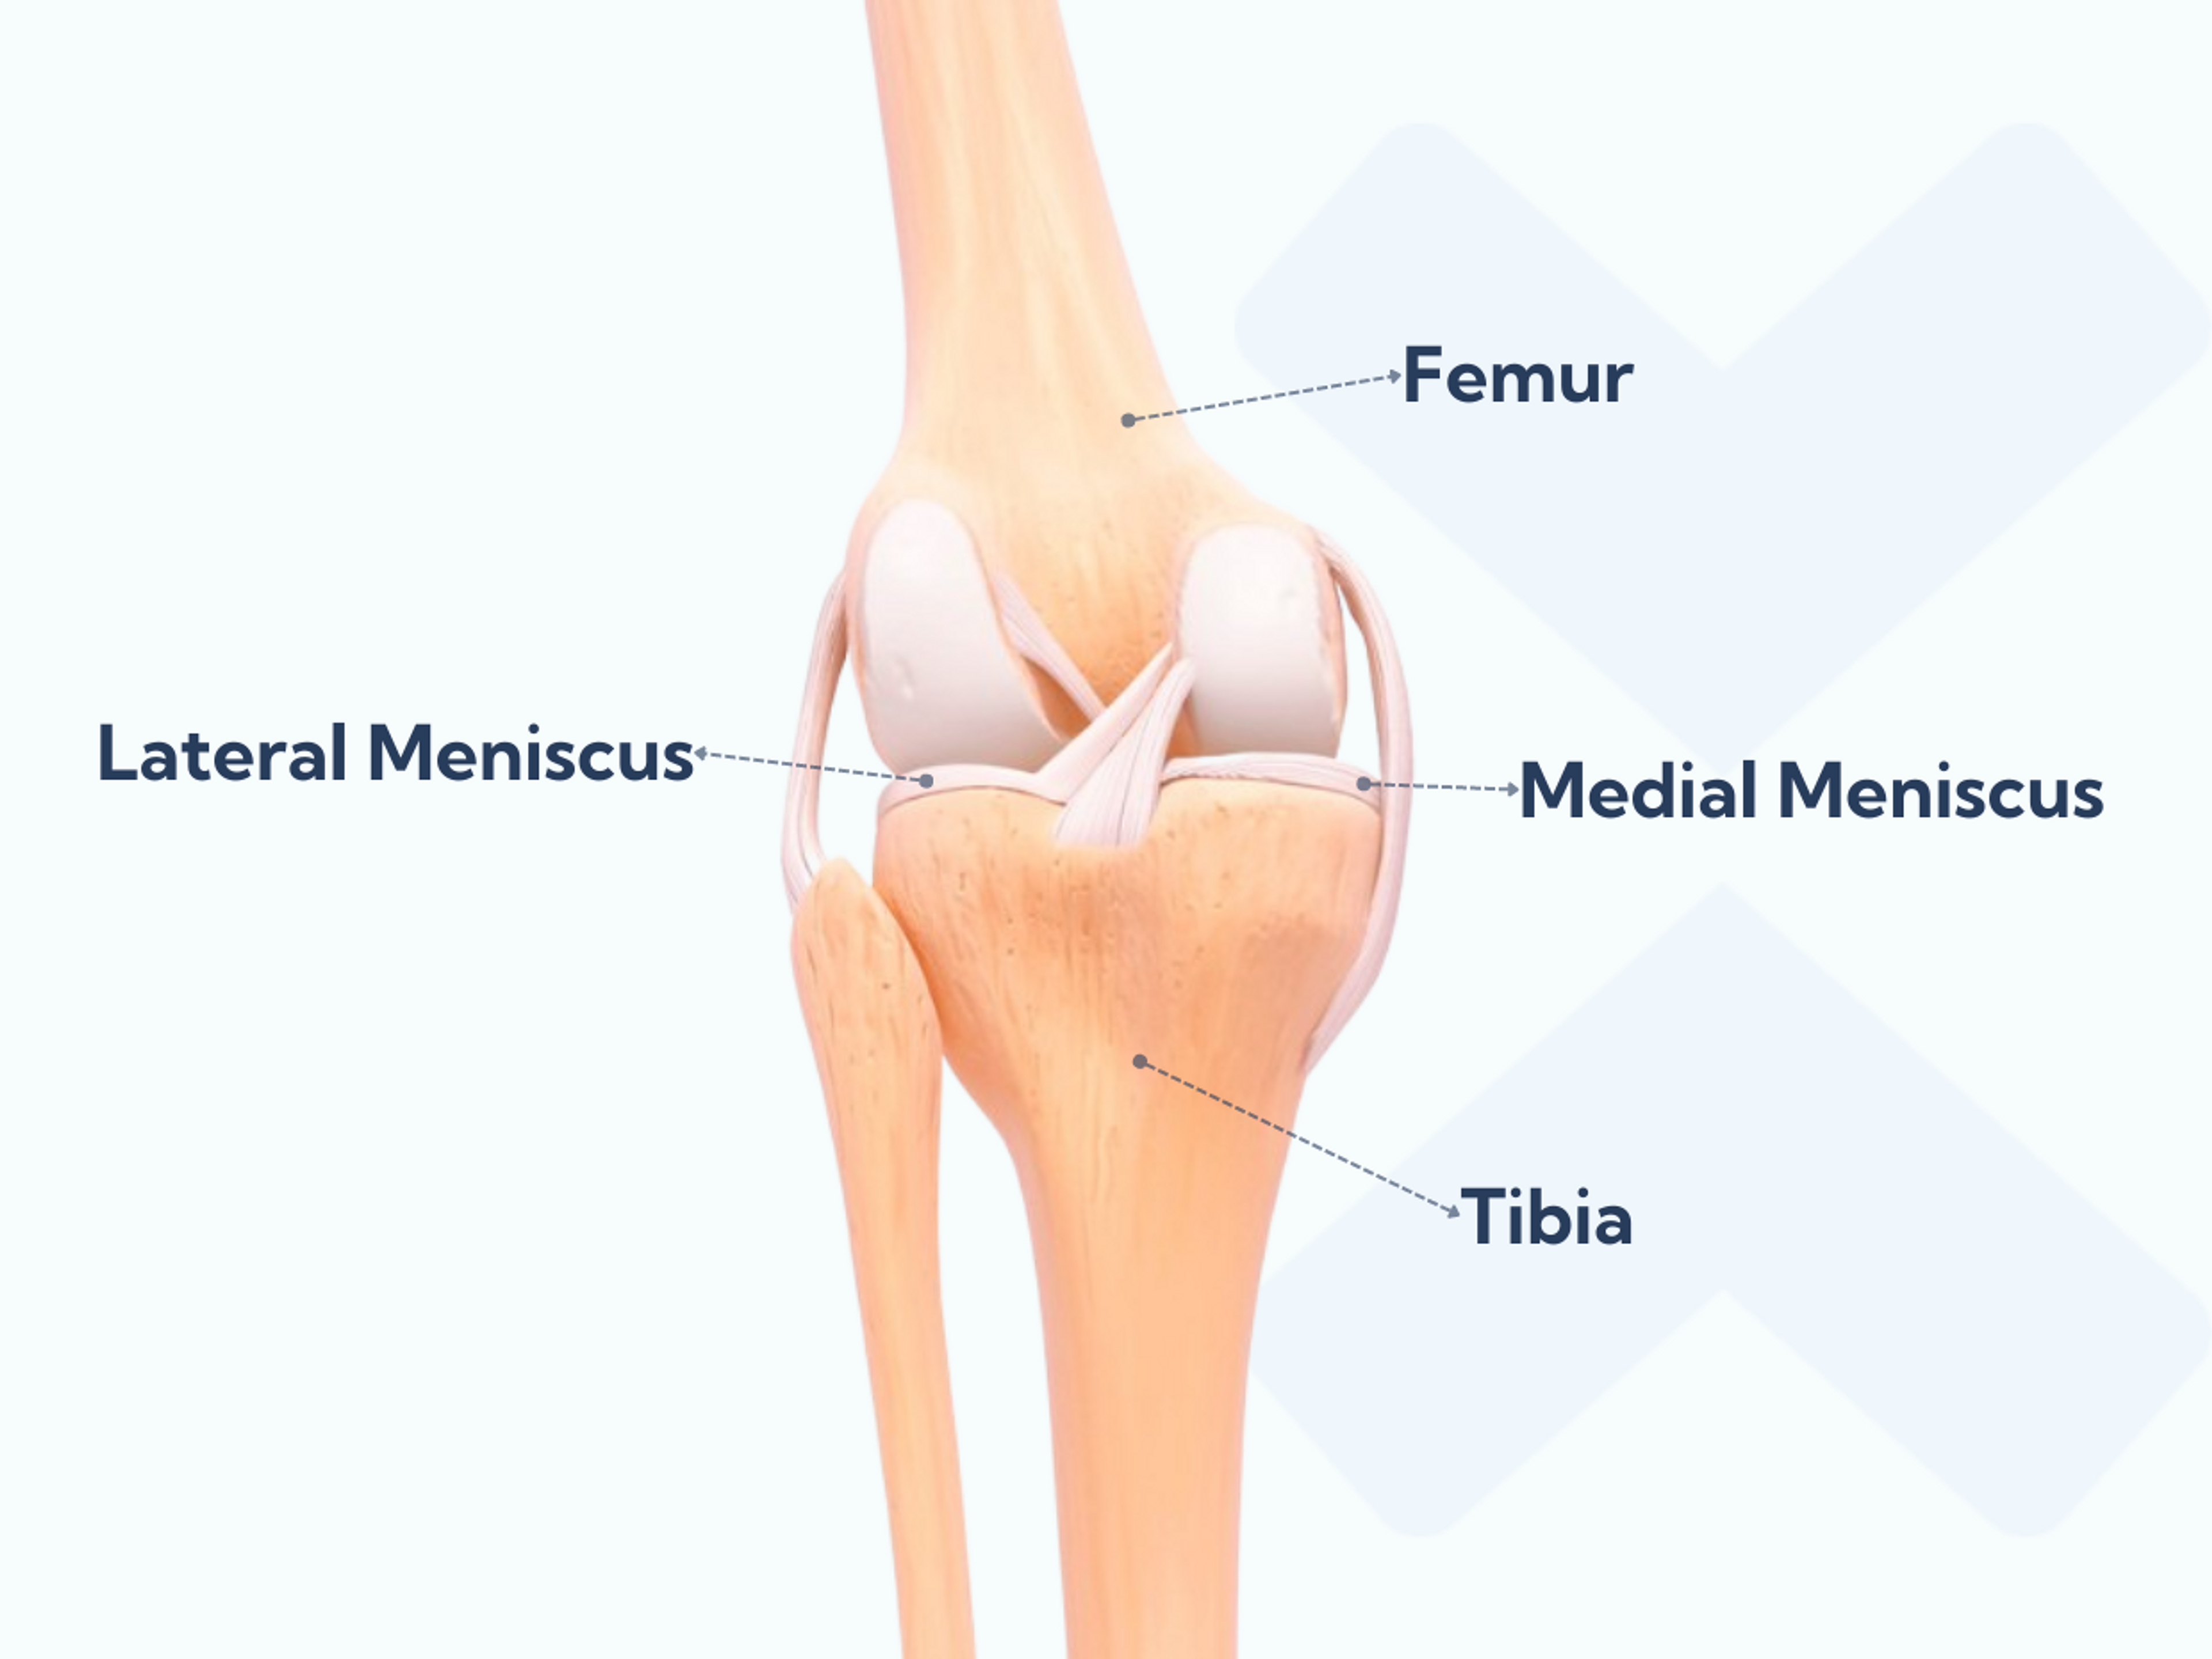 Anatomie du genou montrant les ménisques médial et latéral